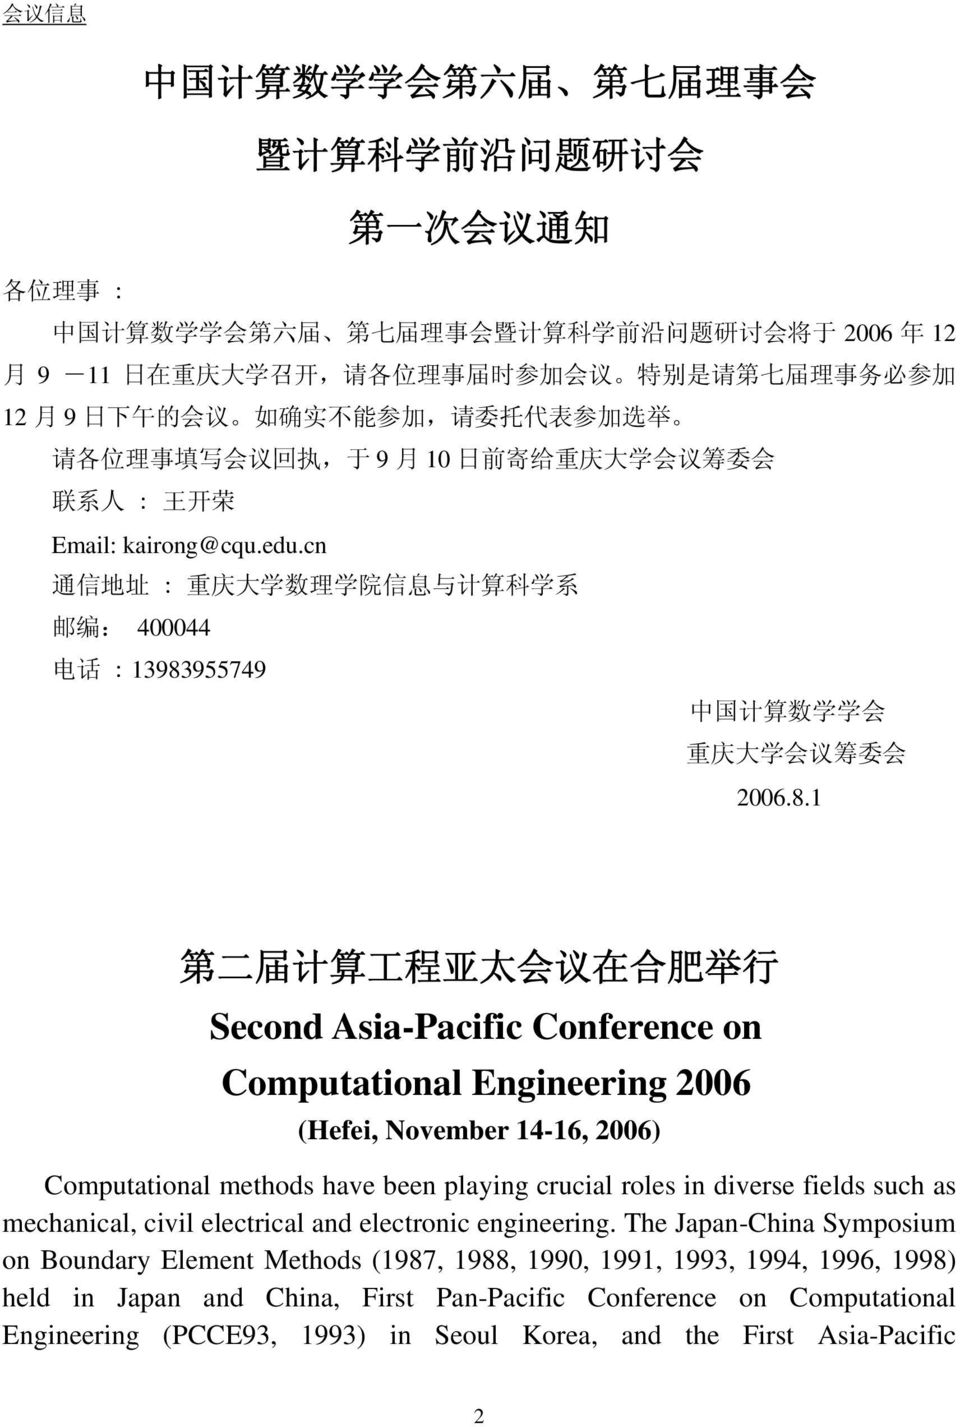 cn 通 信 地 址 : 重 庆 大 学 数 理 学 院 信 息 与 计 算 科 学 系 邮 编 : 400044 电 话 : 13983